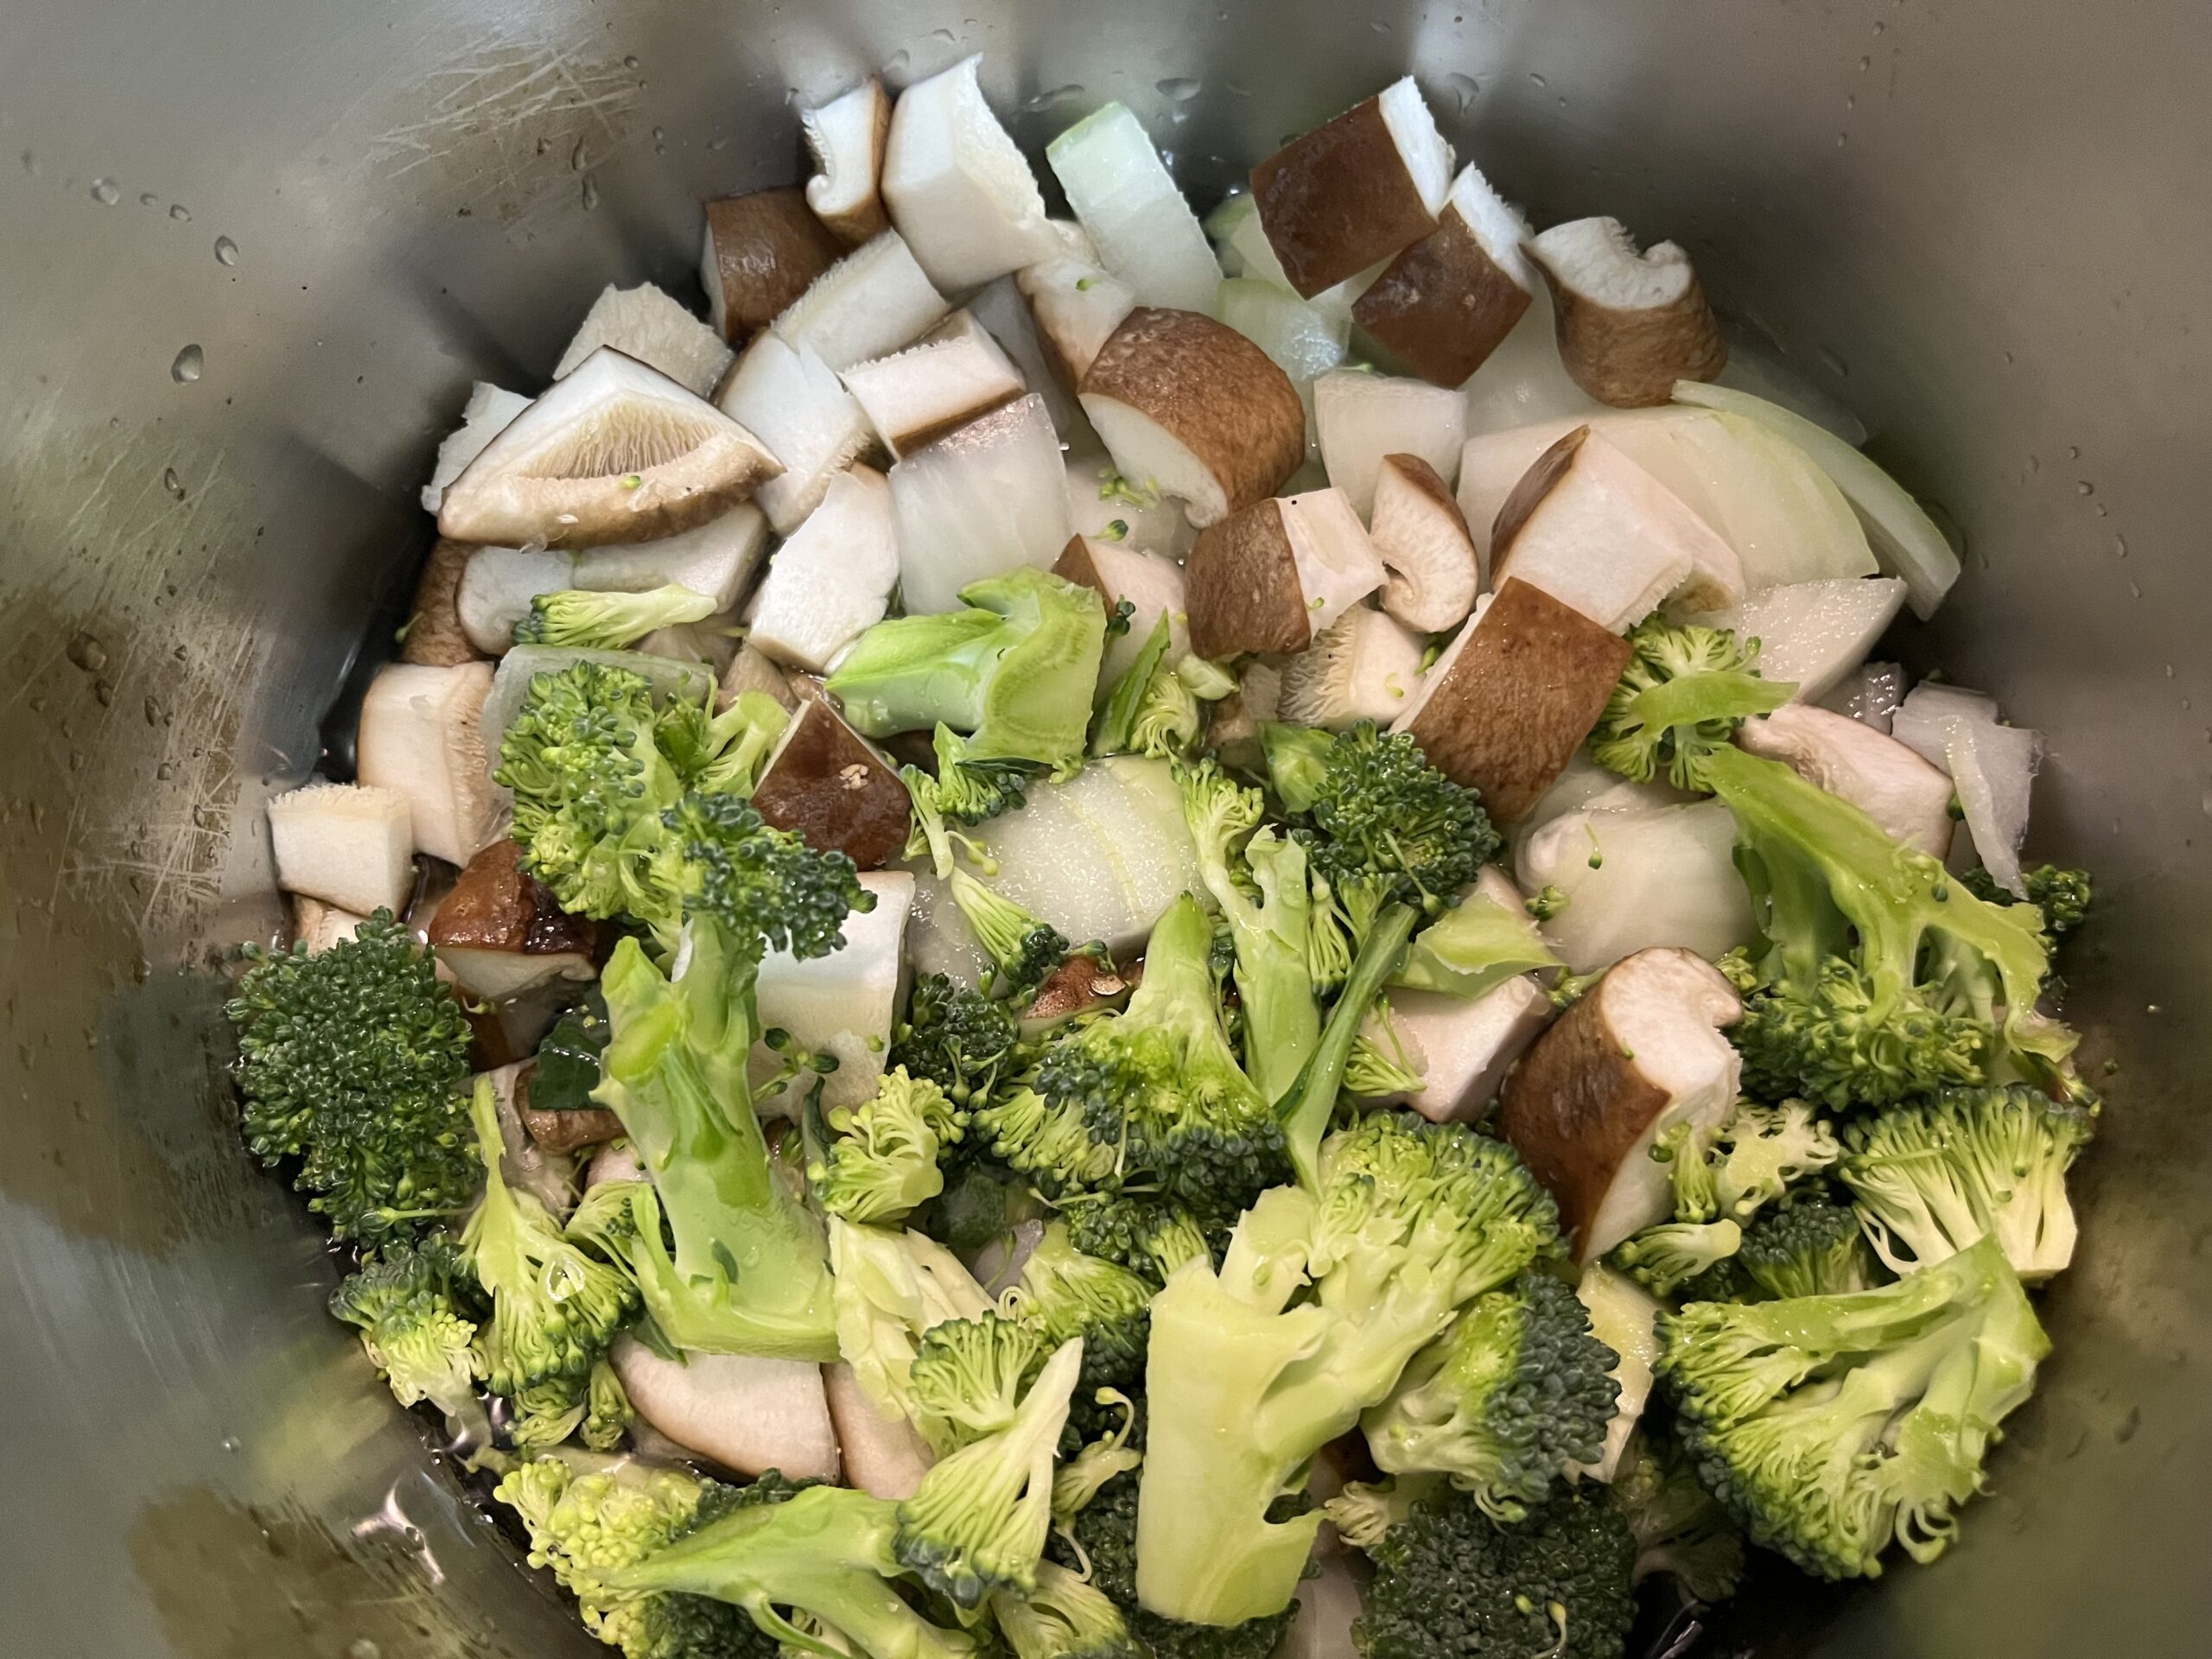 ブロッコリー、玉ねぎ、椎茸を１～２センチに切ってオリーブオイル大さじで炒める様子を撮影した写真